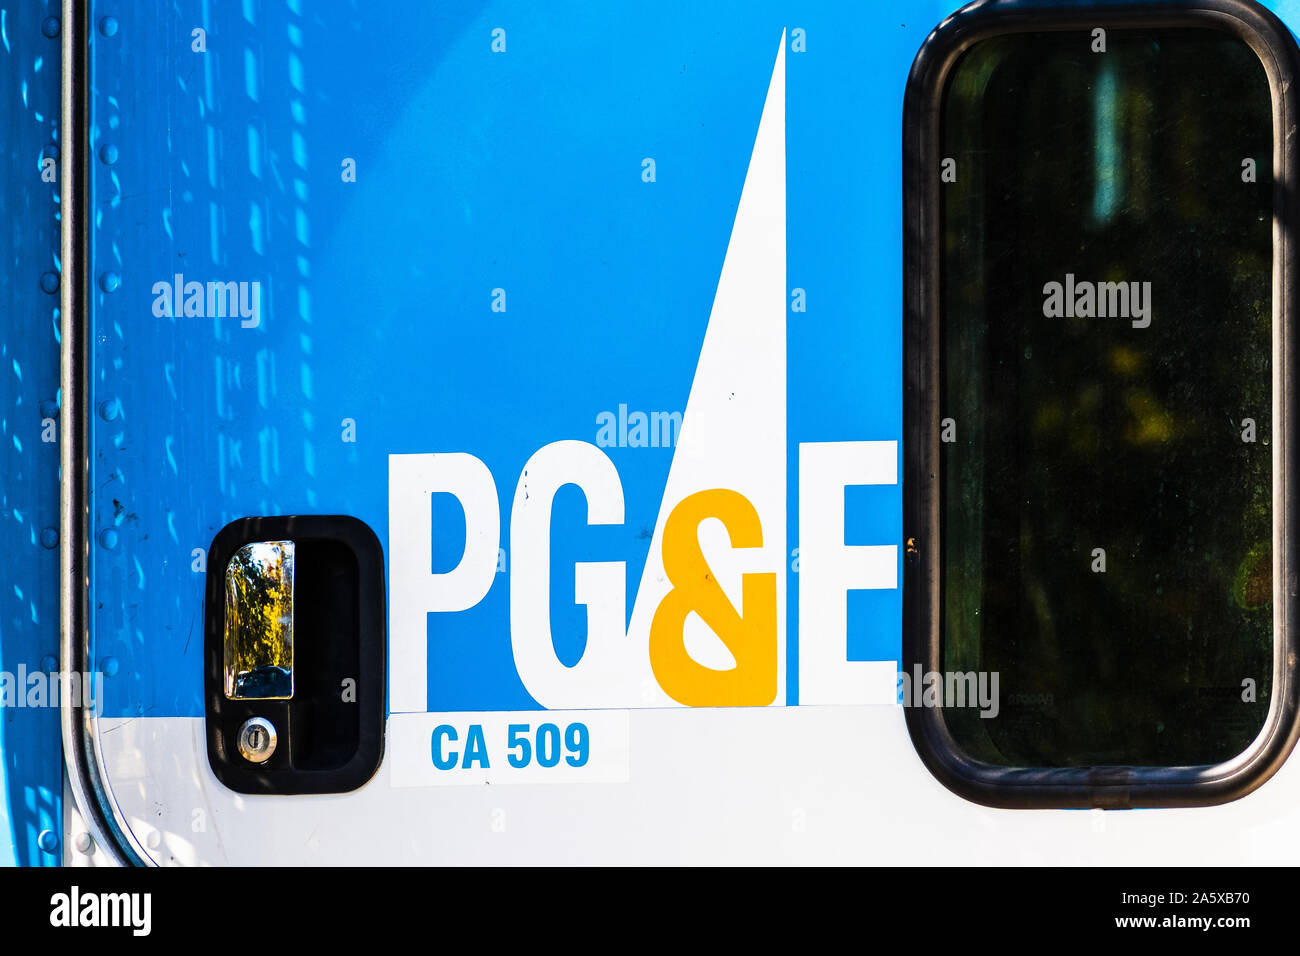 Oct 22, 2019 Sunnyvale / CA / USA - A proximité de PG&E (Pacific Gas and Electric) affiche sur l'un de leurs véhicules de service Banque D'Images